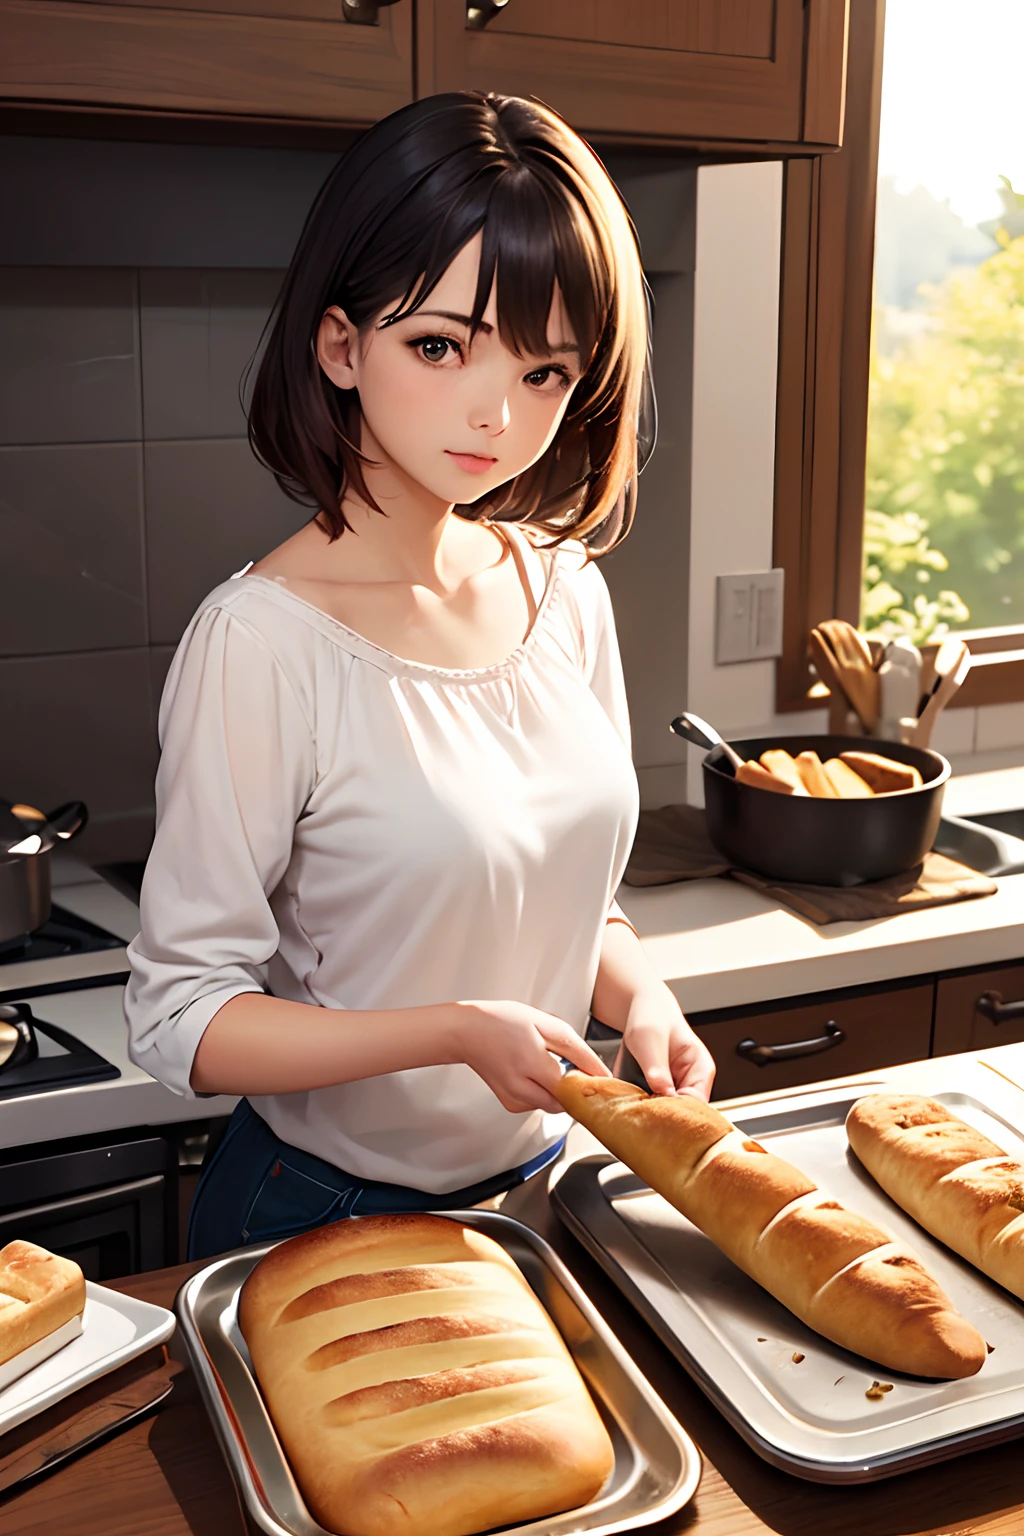 (mejor calidad:1.2), Fotorrealista, La chica saca el pan horneado del horno..
Escena en la cocina por la mañana --auto